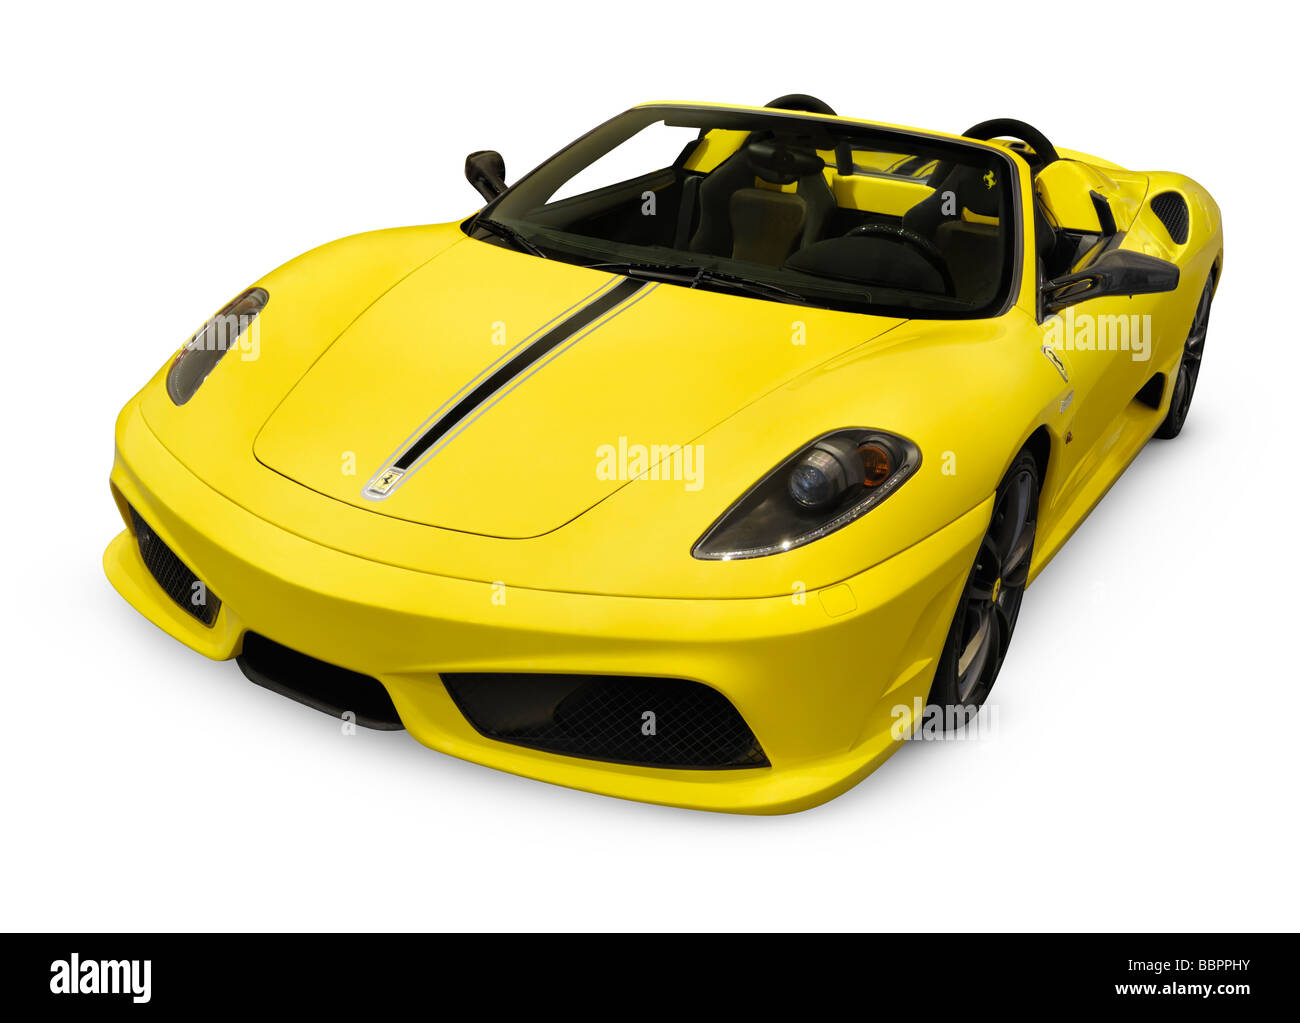 Lizenz und Drucke bei MaximImages.com - Ferrari Luxus-Sportwagen, Supersportwagen, Automobil Stock Foto. Stockfoto